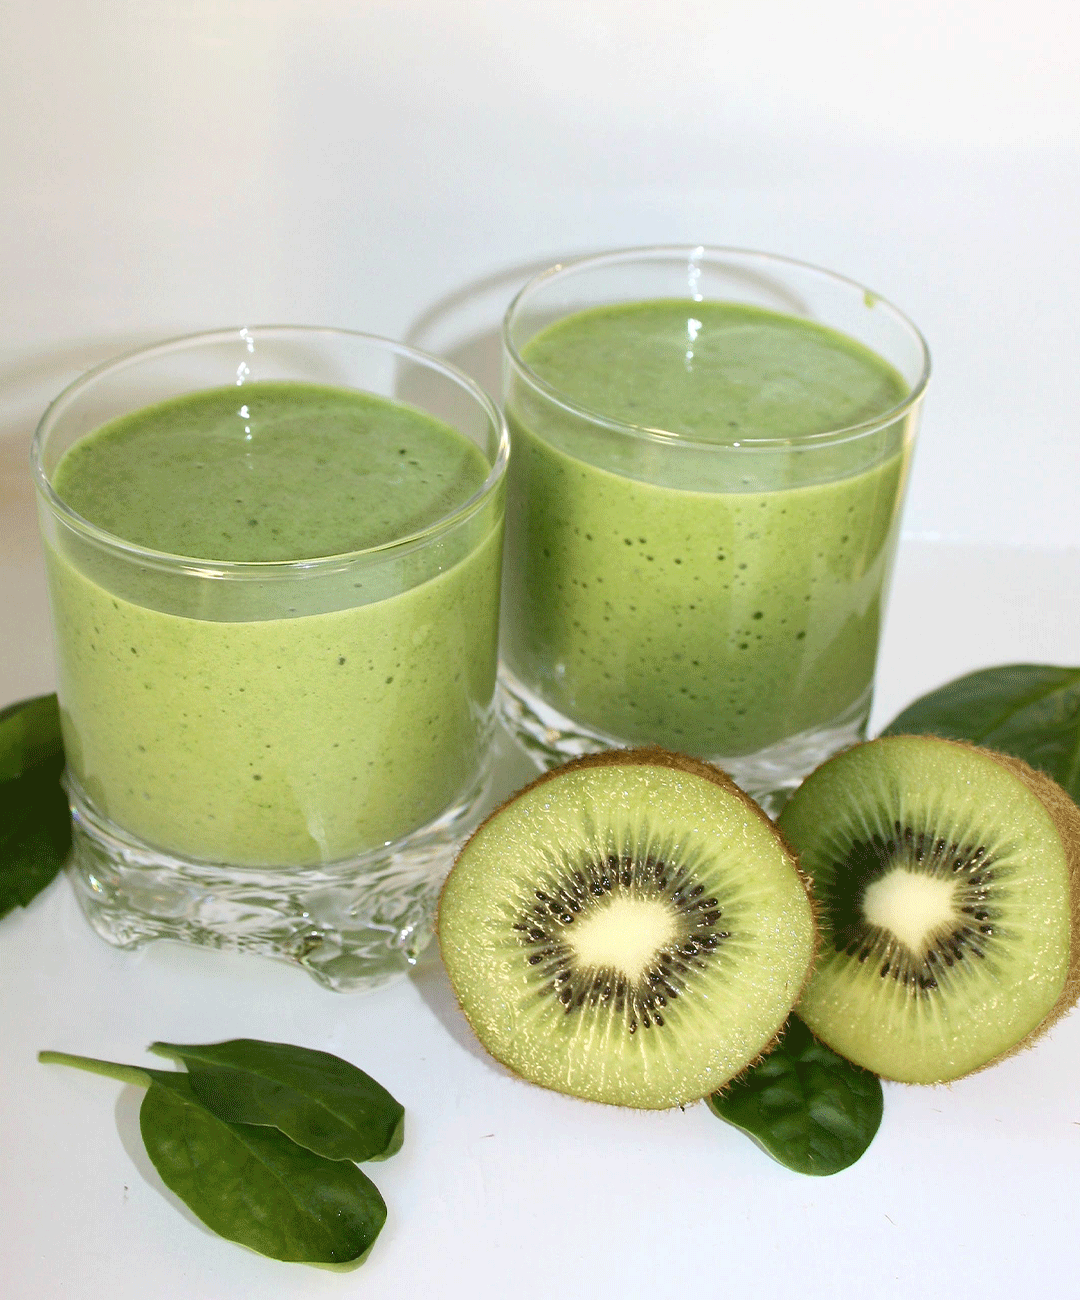 Grön smoothie i fina glas dekorerade med kiwi och bladspenat